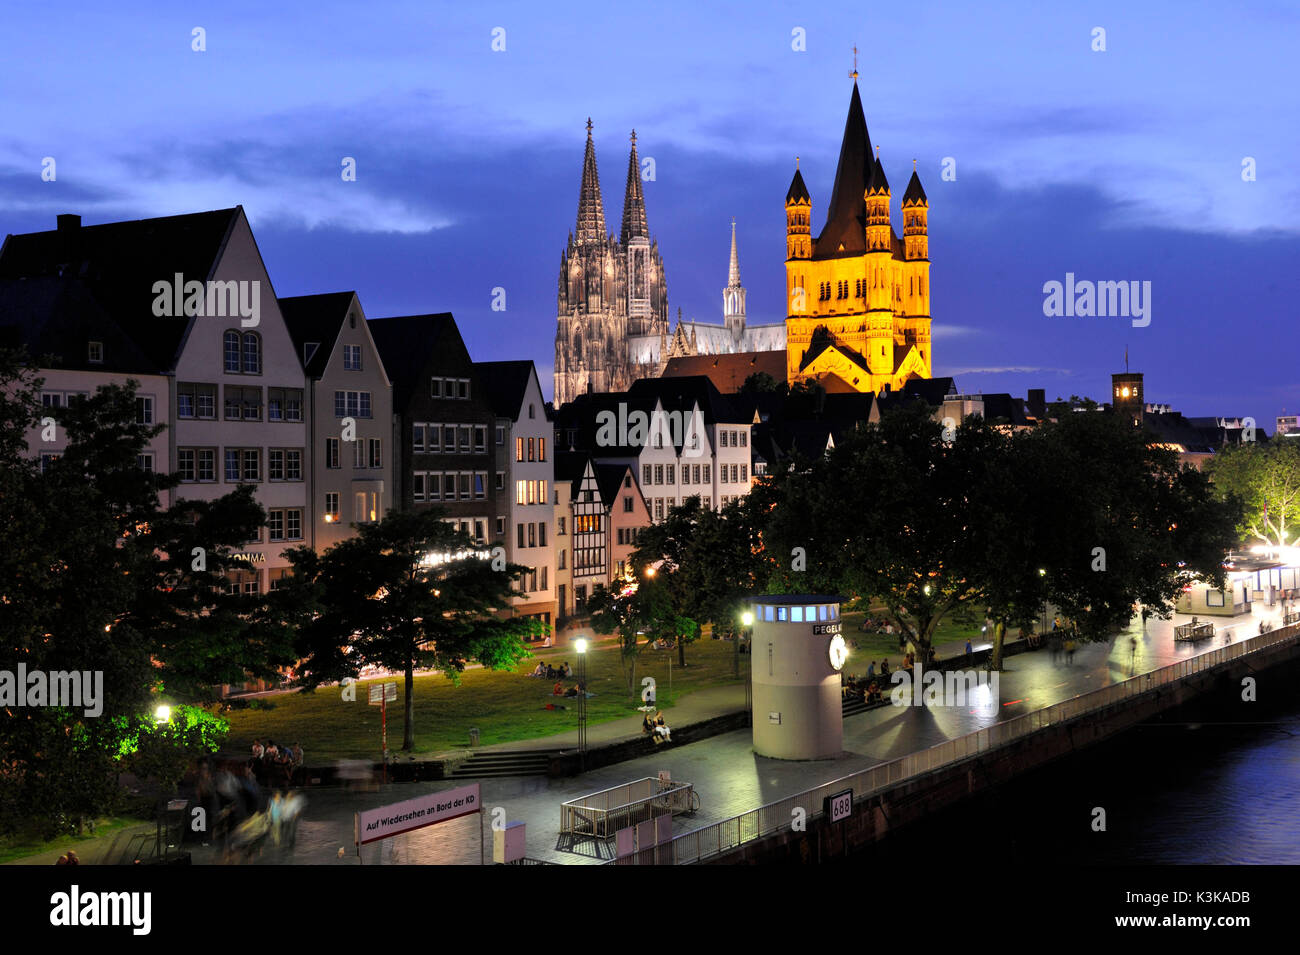 Deutschland, Nordrhein-Westfalen, Köln, der Rhein, der Dom zu Köln, der von der UNESCO zum Weltkulturerbe erklärt wurde, und die Kirche Groß St. Martin Stockfoto